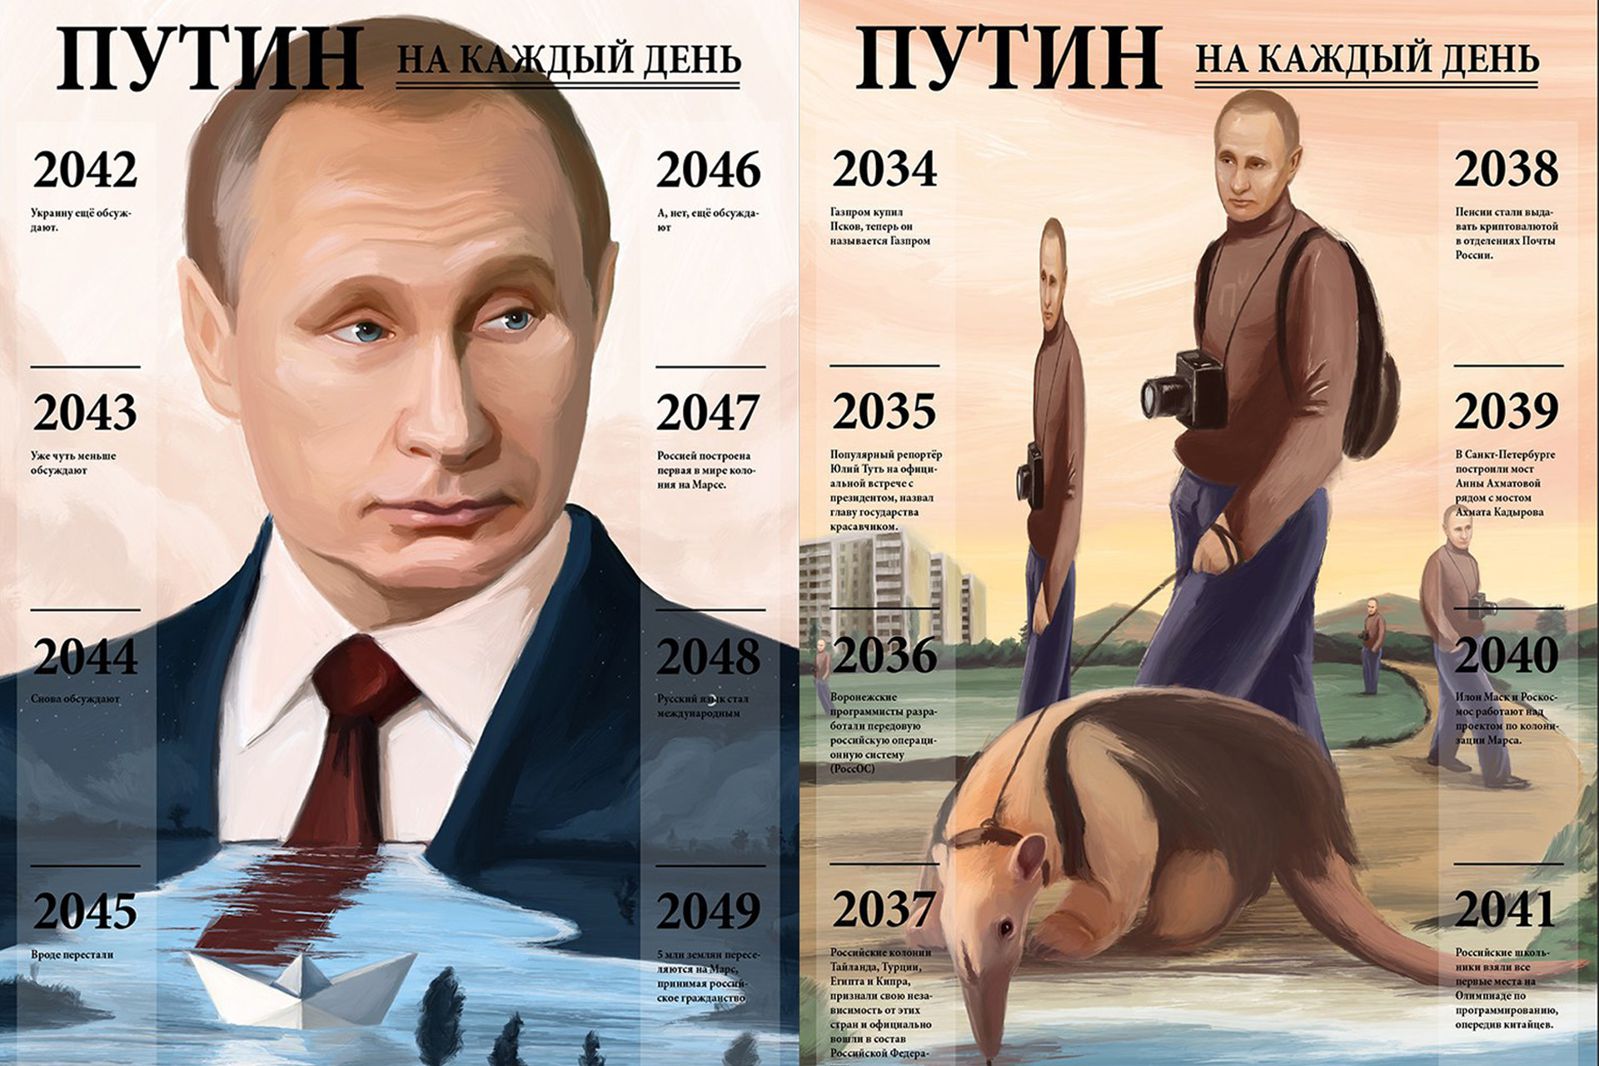 Пермский художник Вячеслав Нестеров создал календарь с Путиным до 2120 года